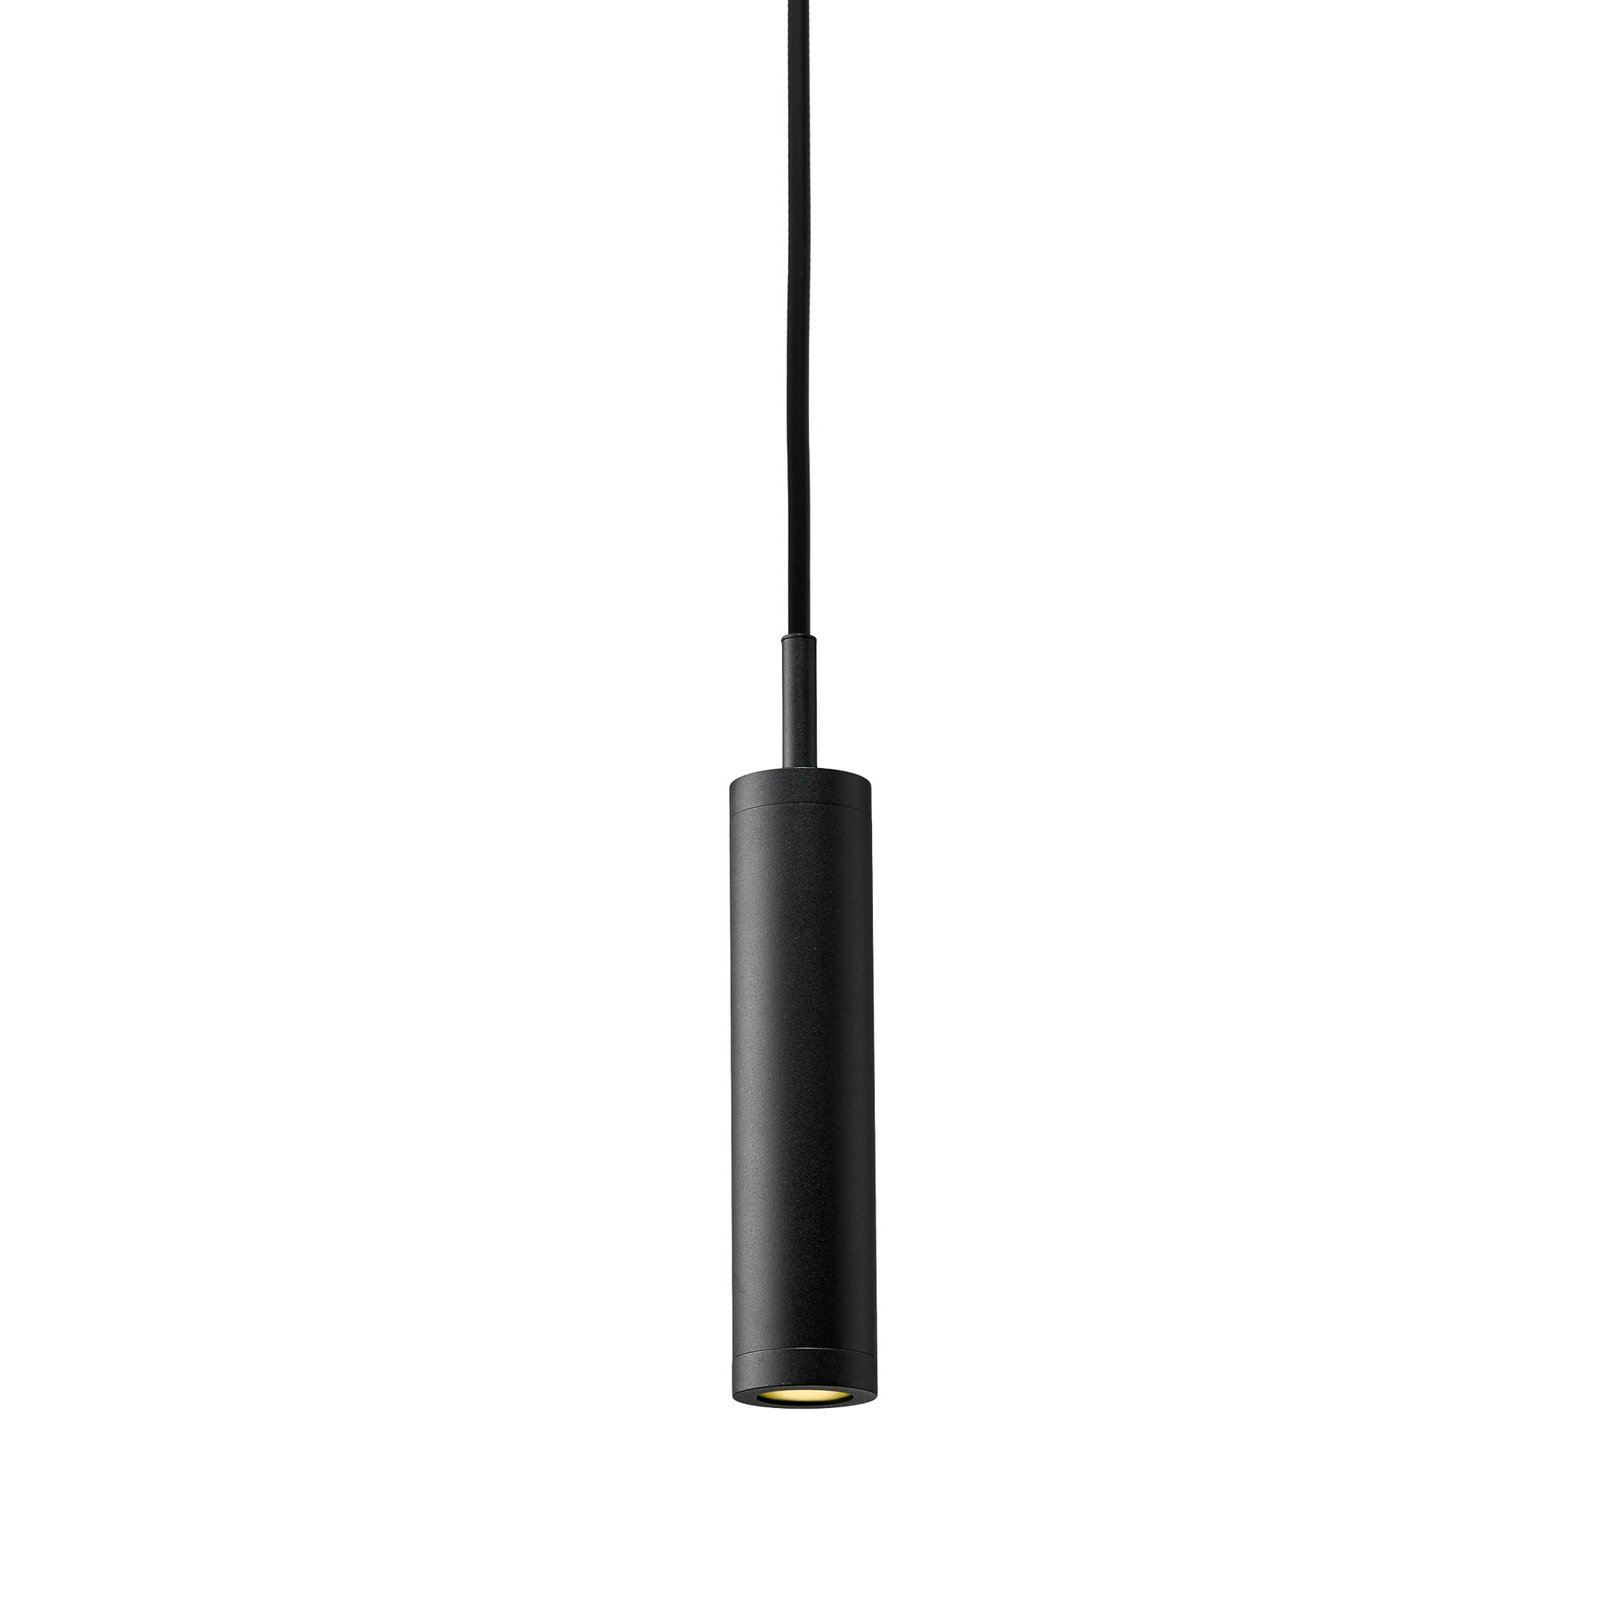 Anhengslampe Liberty Spot, svart, høyde 25 cm